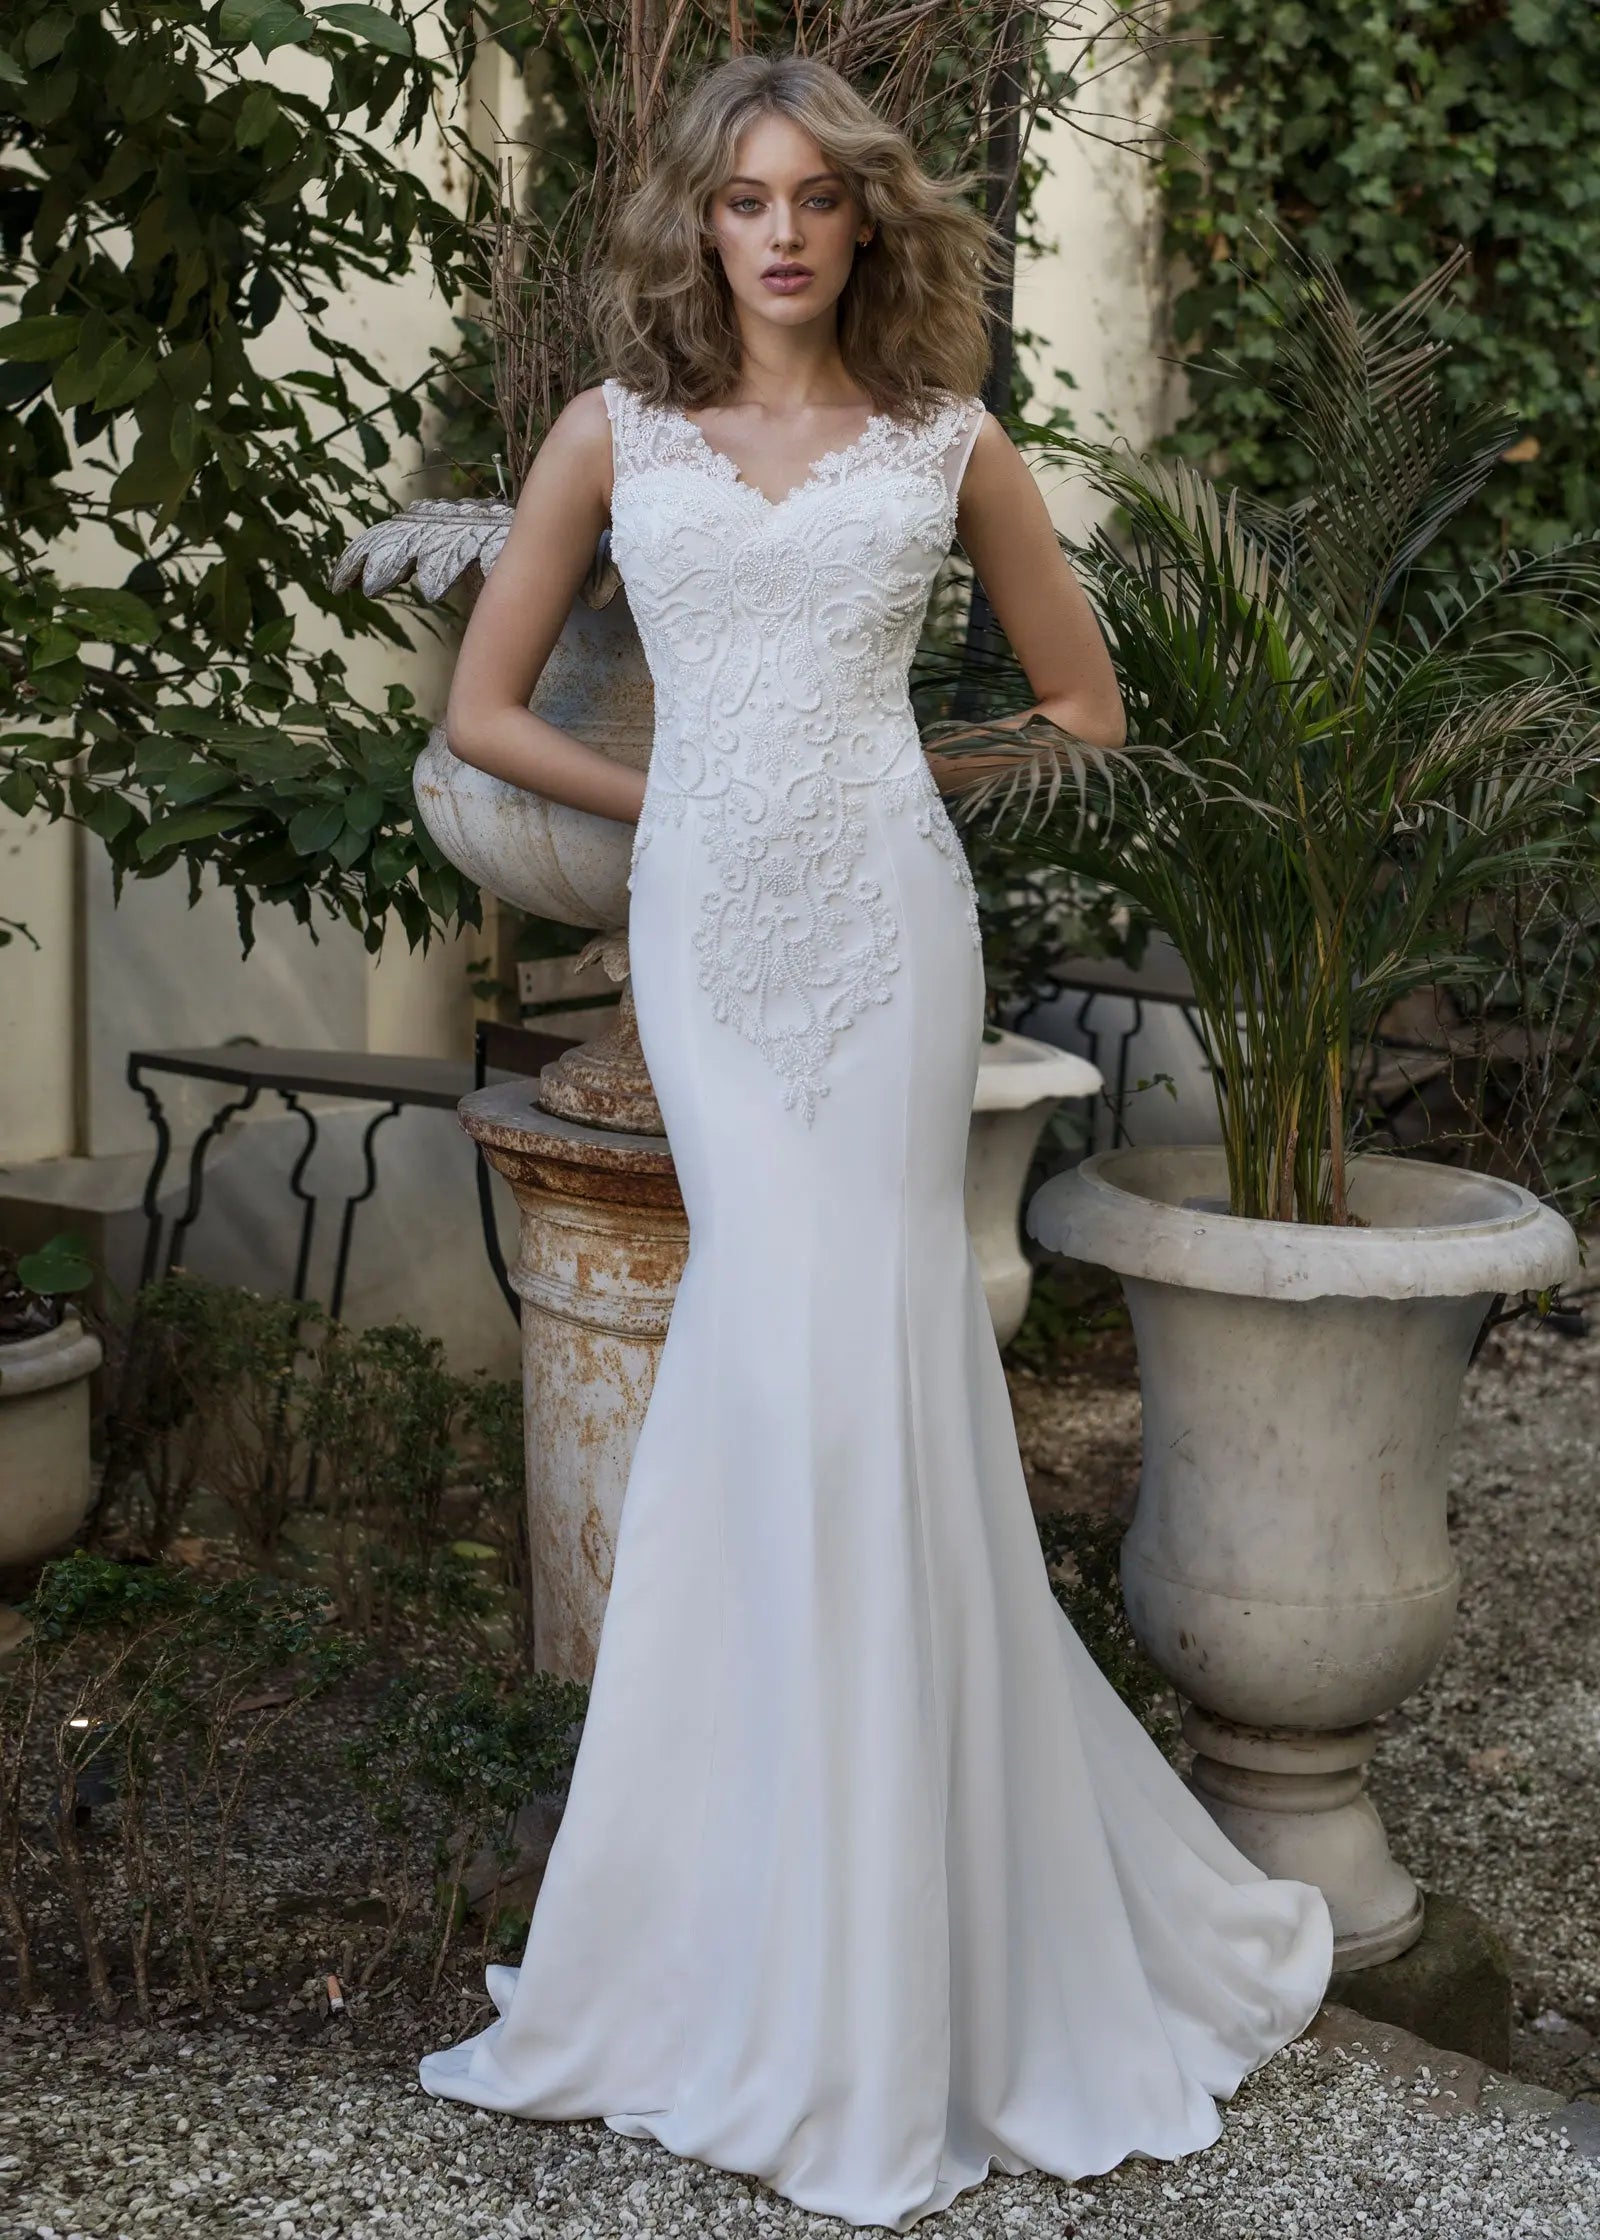 Effortlessly elegant in the AFWHarmony wedding dress. Aisha Fashion World